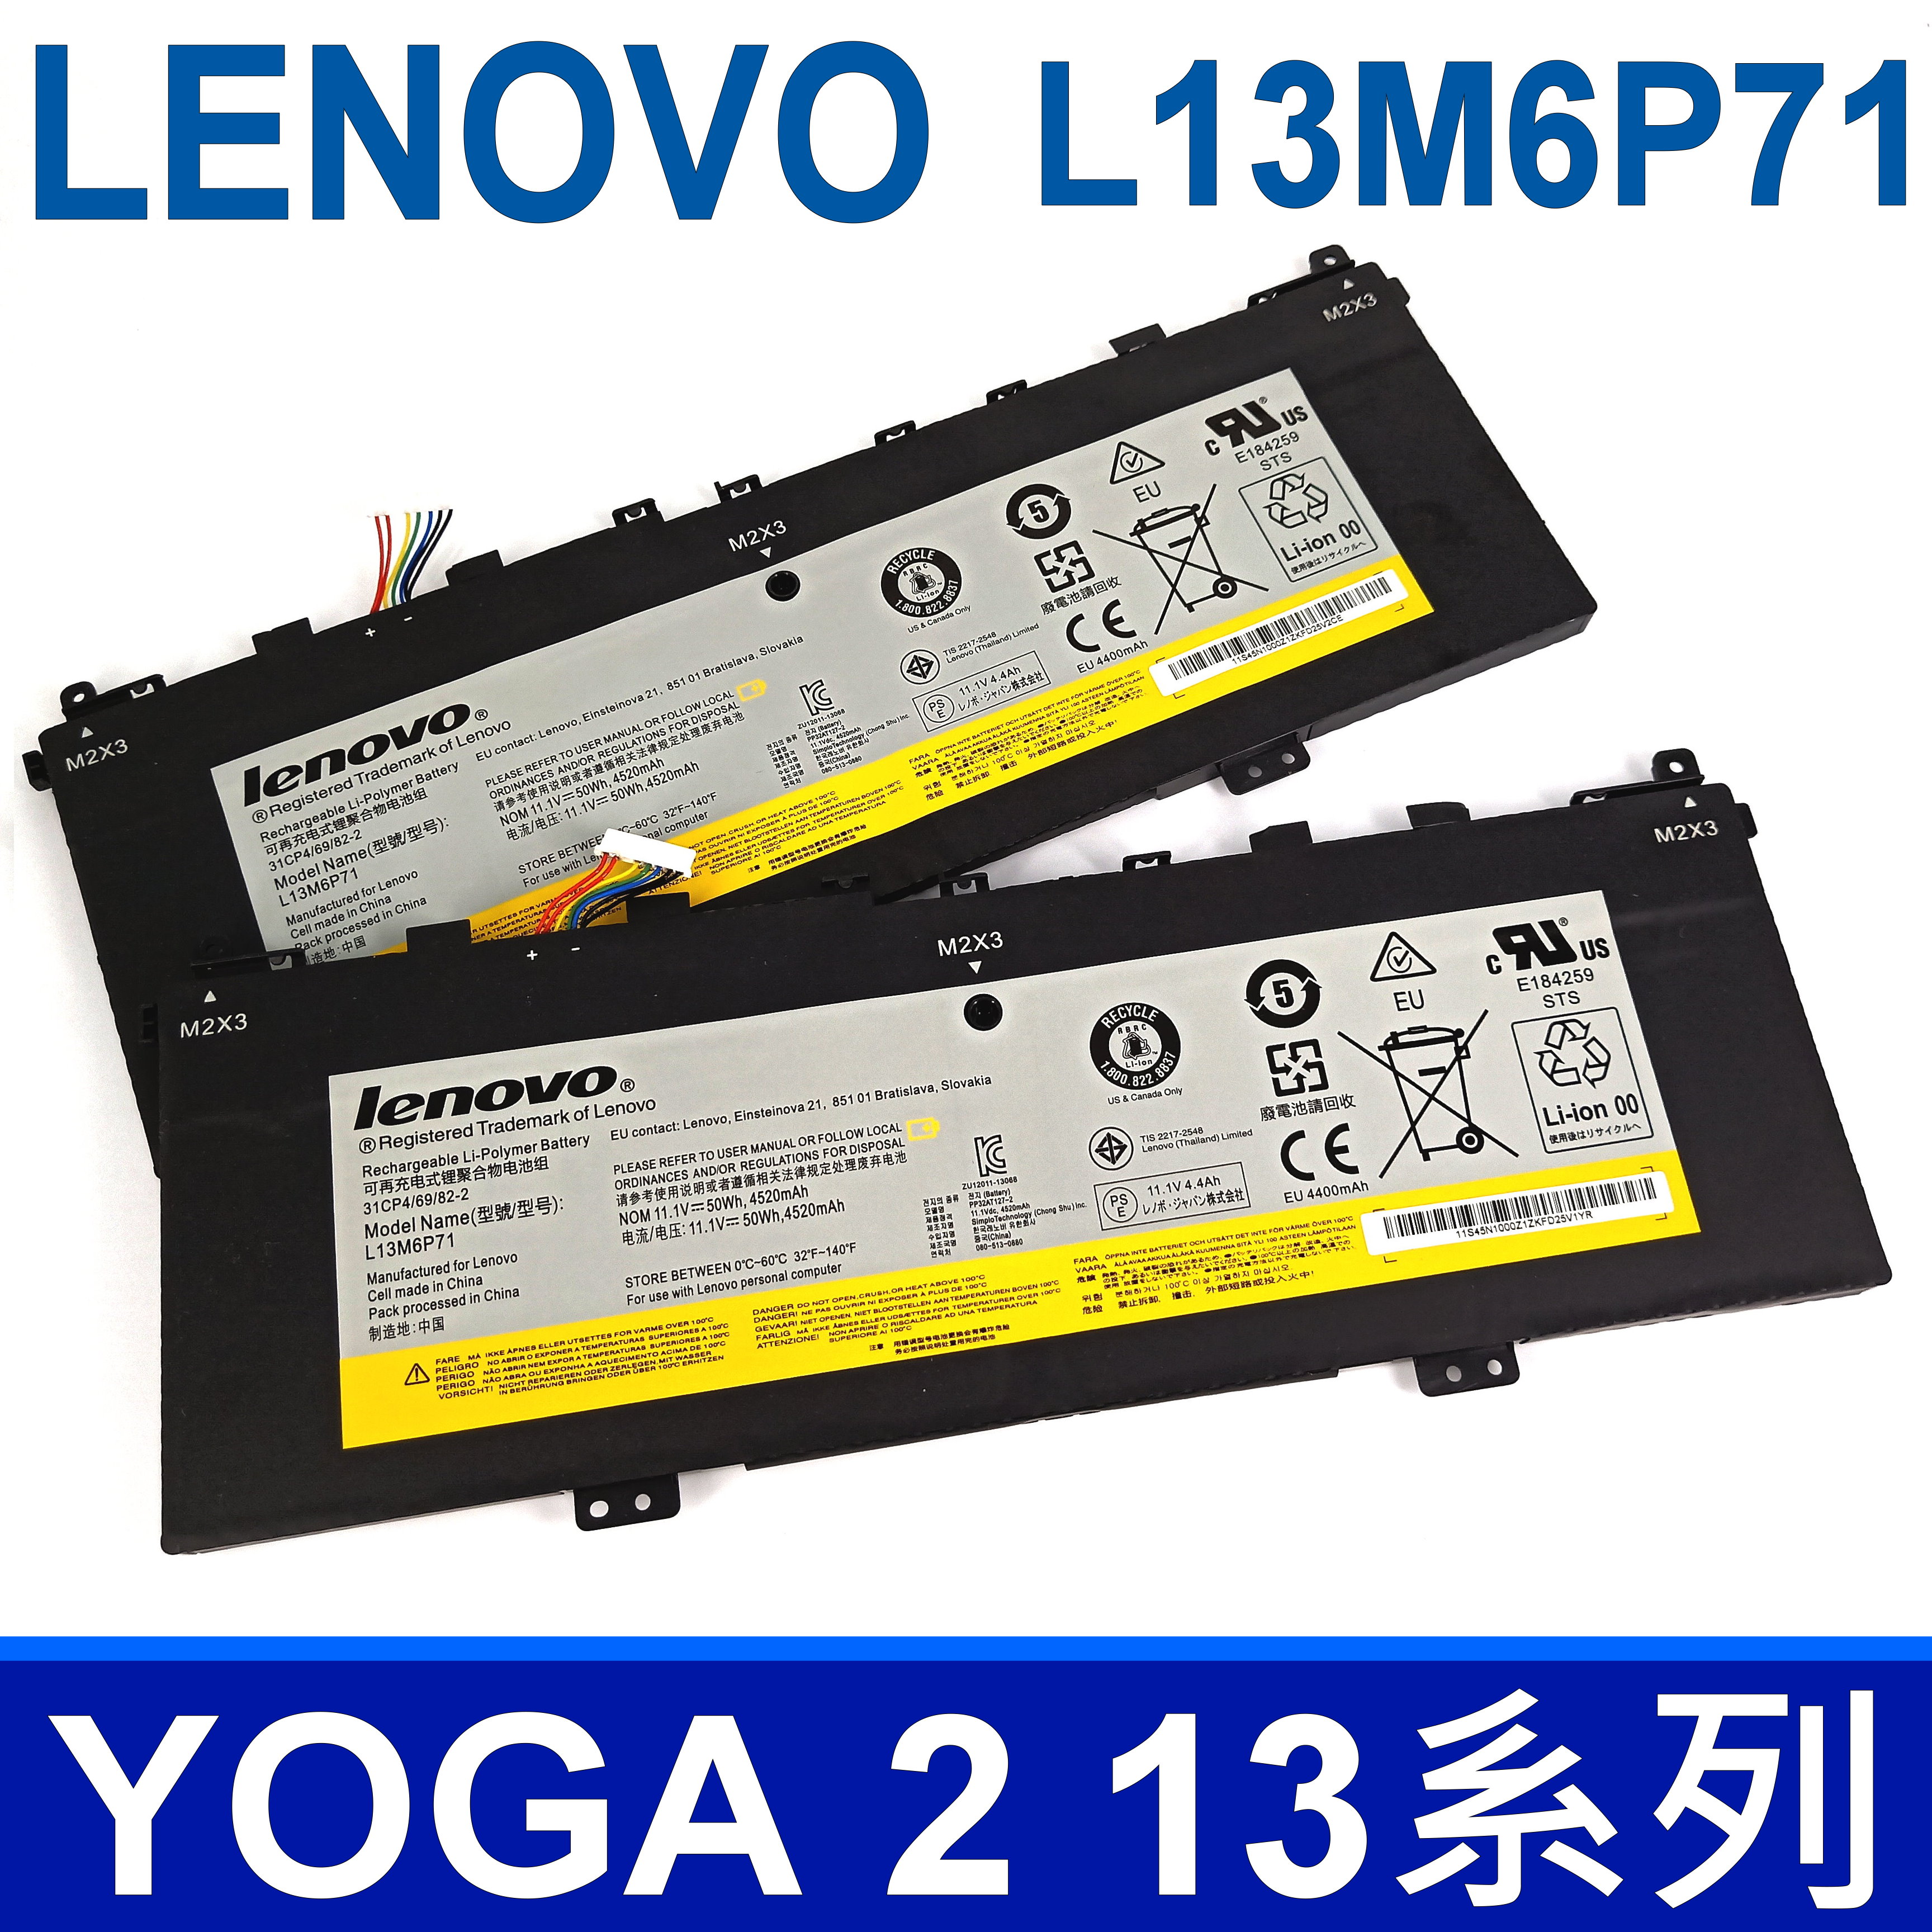 LENOVO L13M6P71 原廠電池 L13S6P71 YOGA 2 13 系列